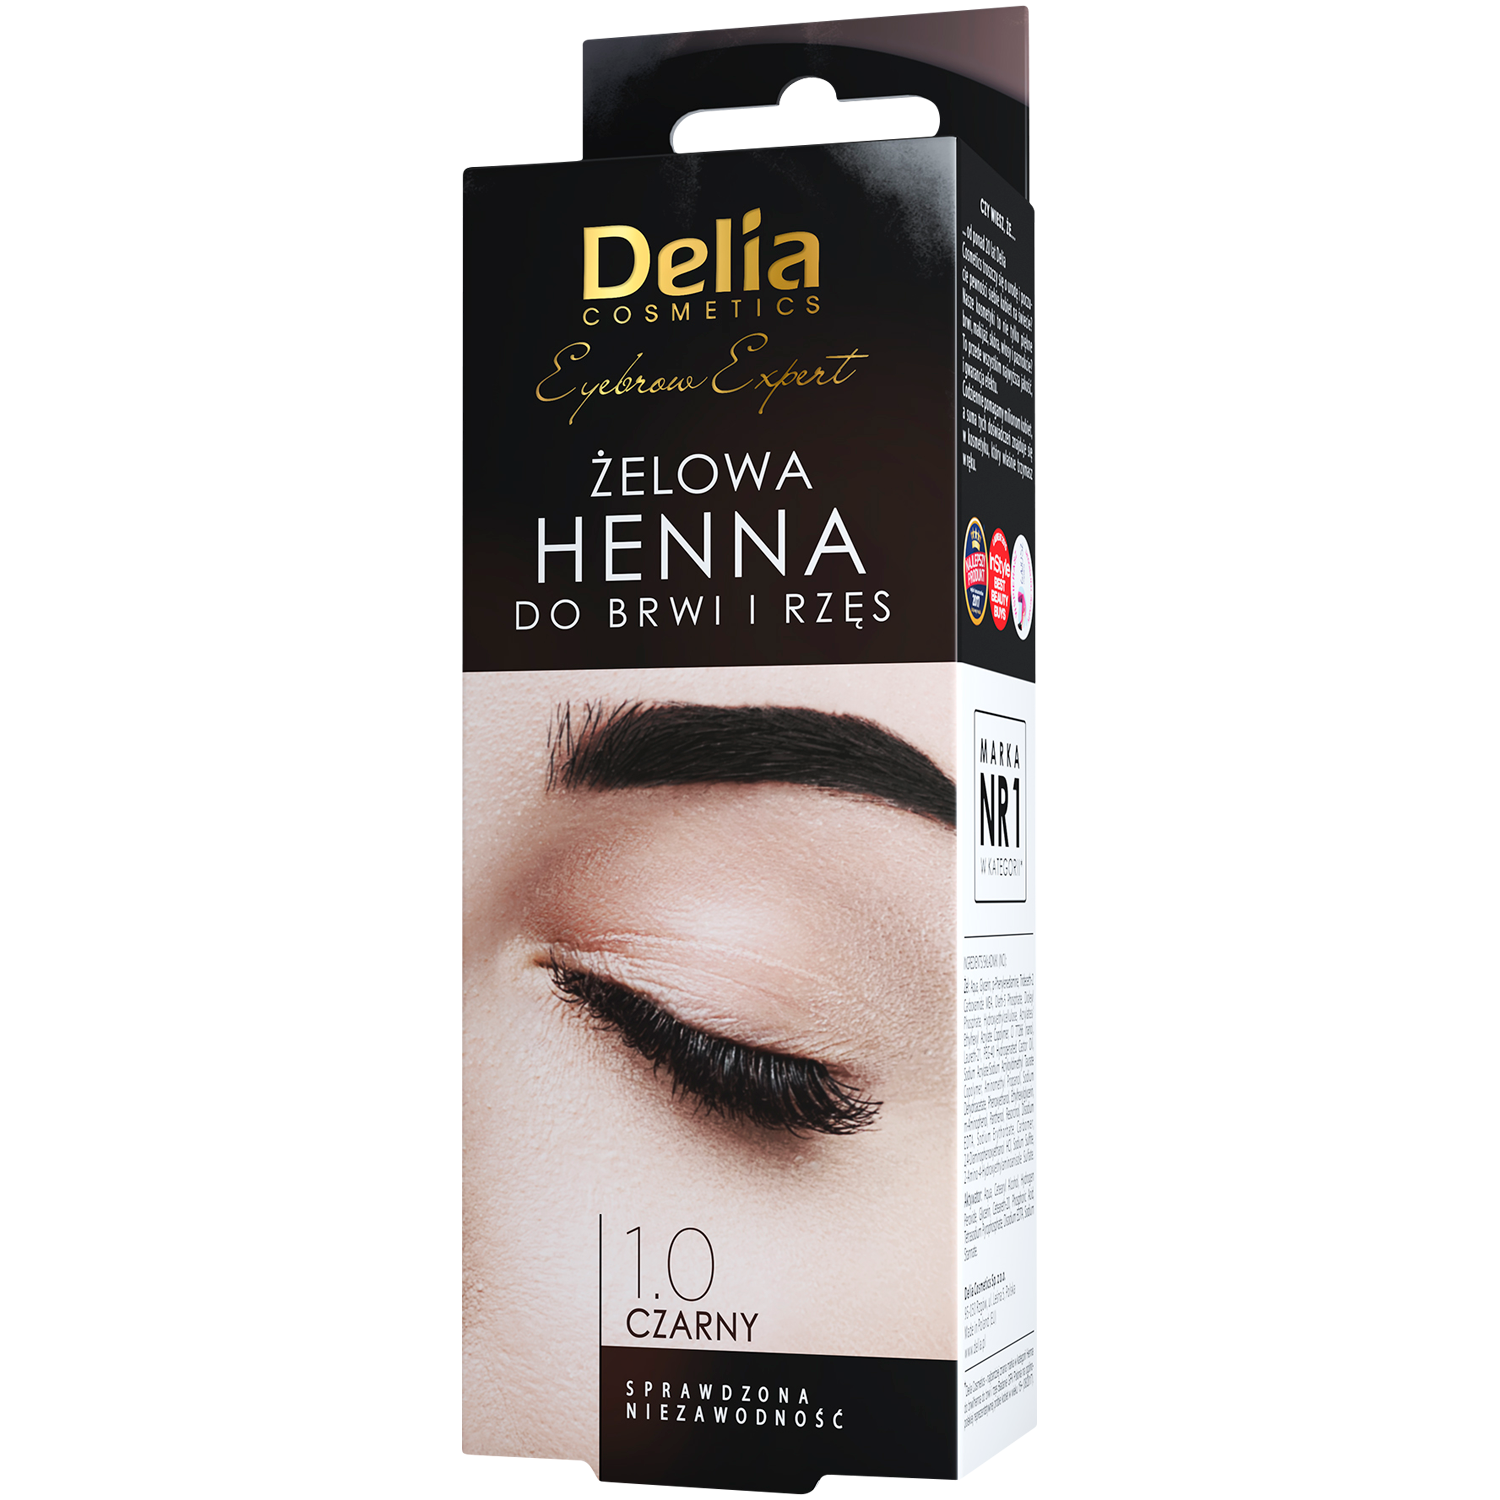 Гель-хна для бровей и ресниц 1.0 черная Delia Eyebrow Expert, 15 мл